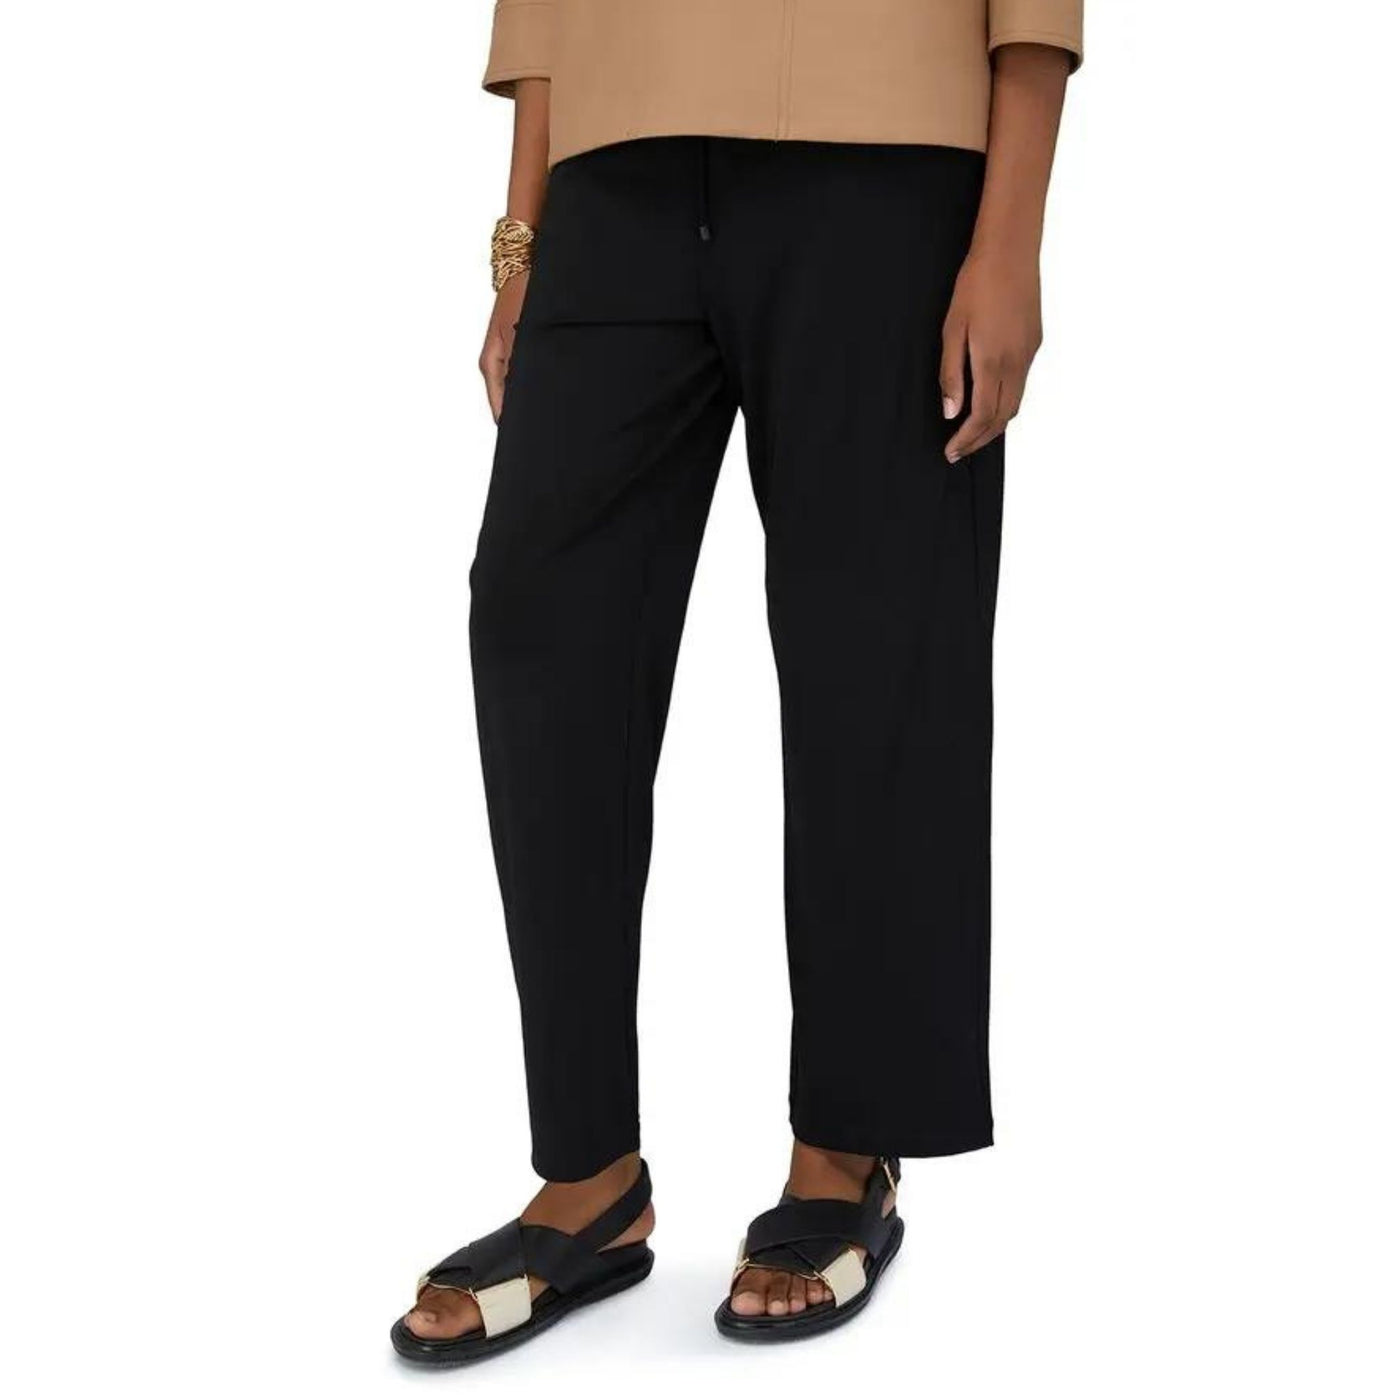 Pantaloni Donna Orbita in viscosa e vita elasticizzata